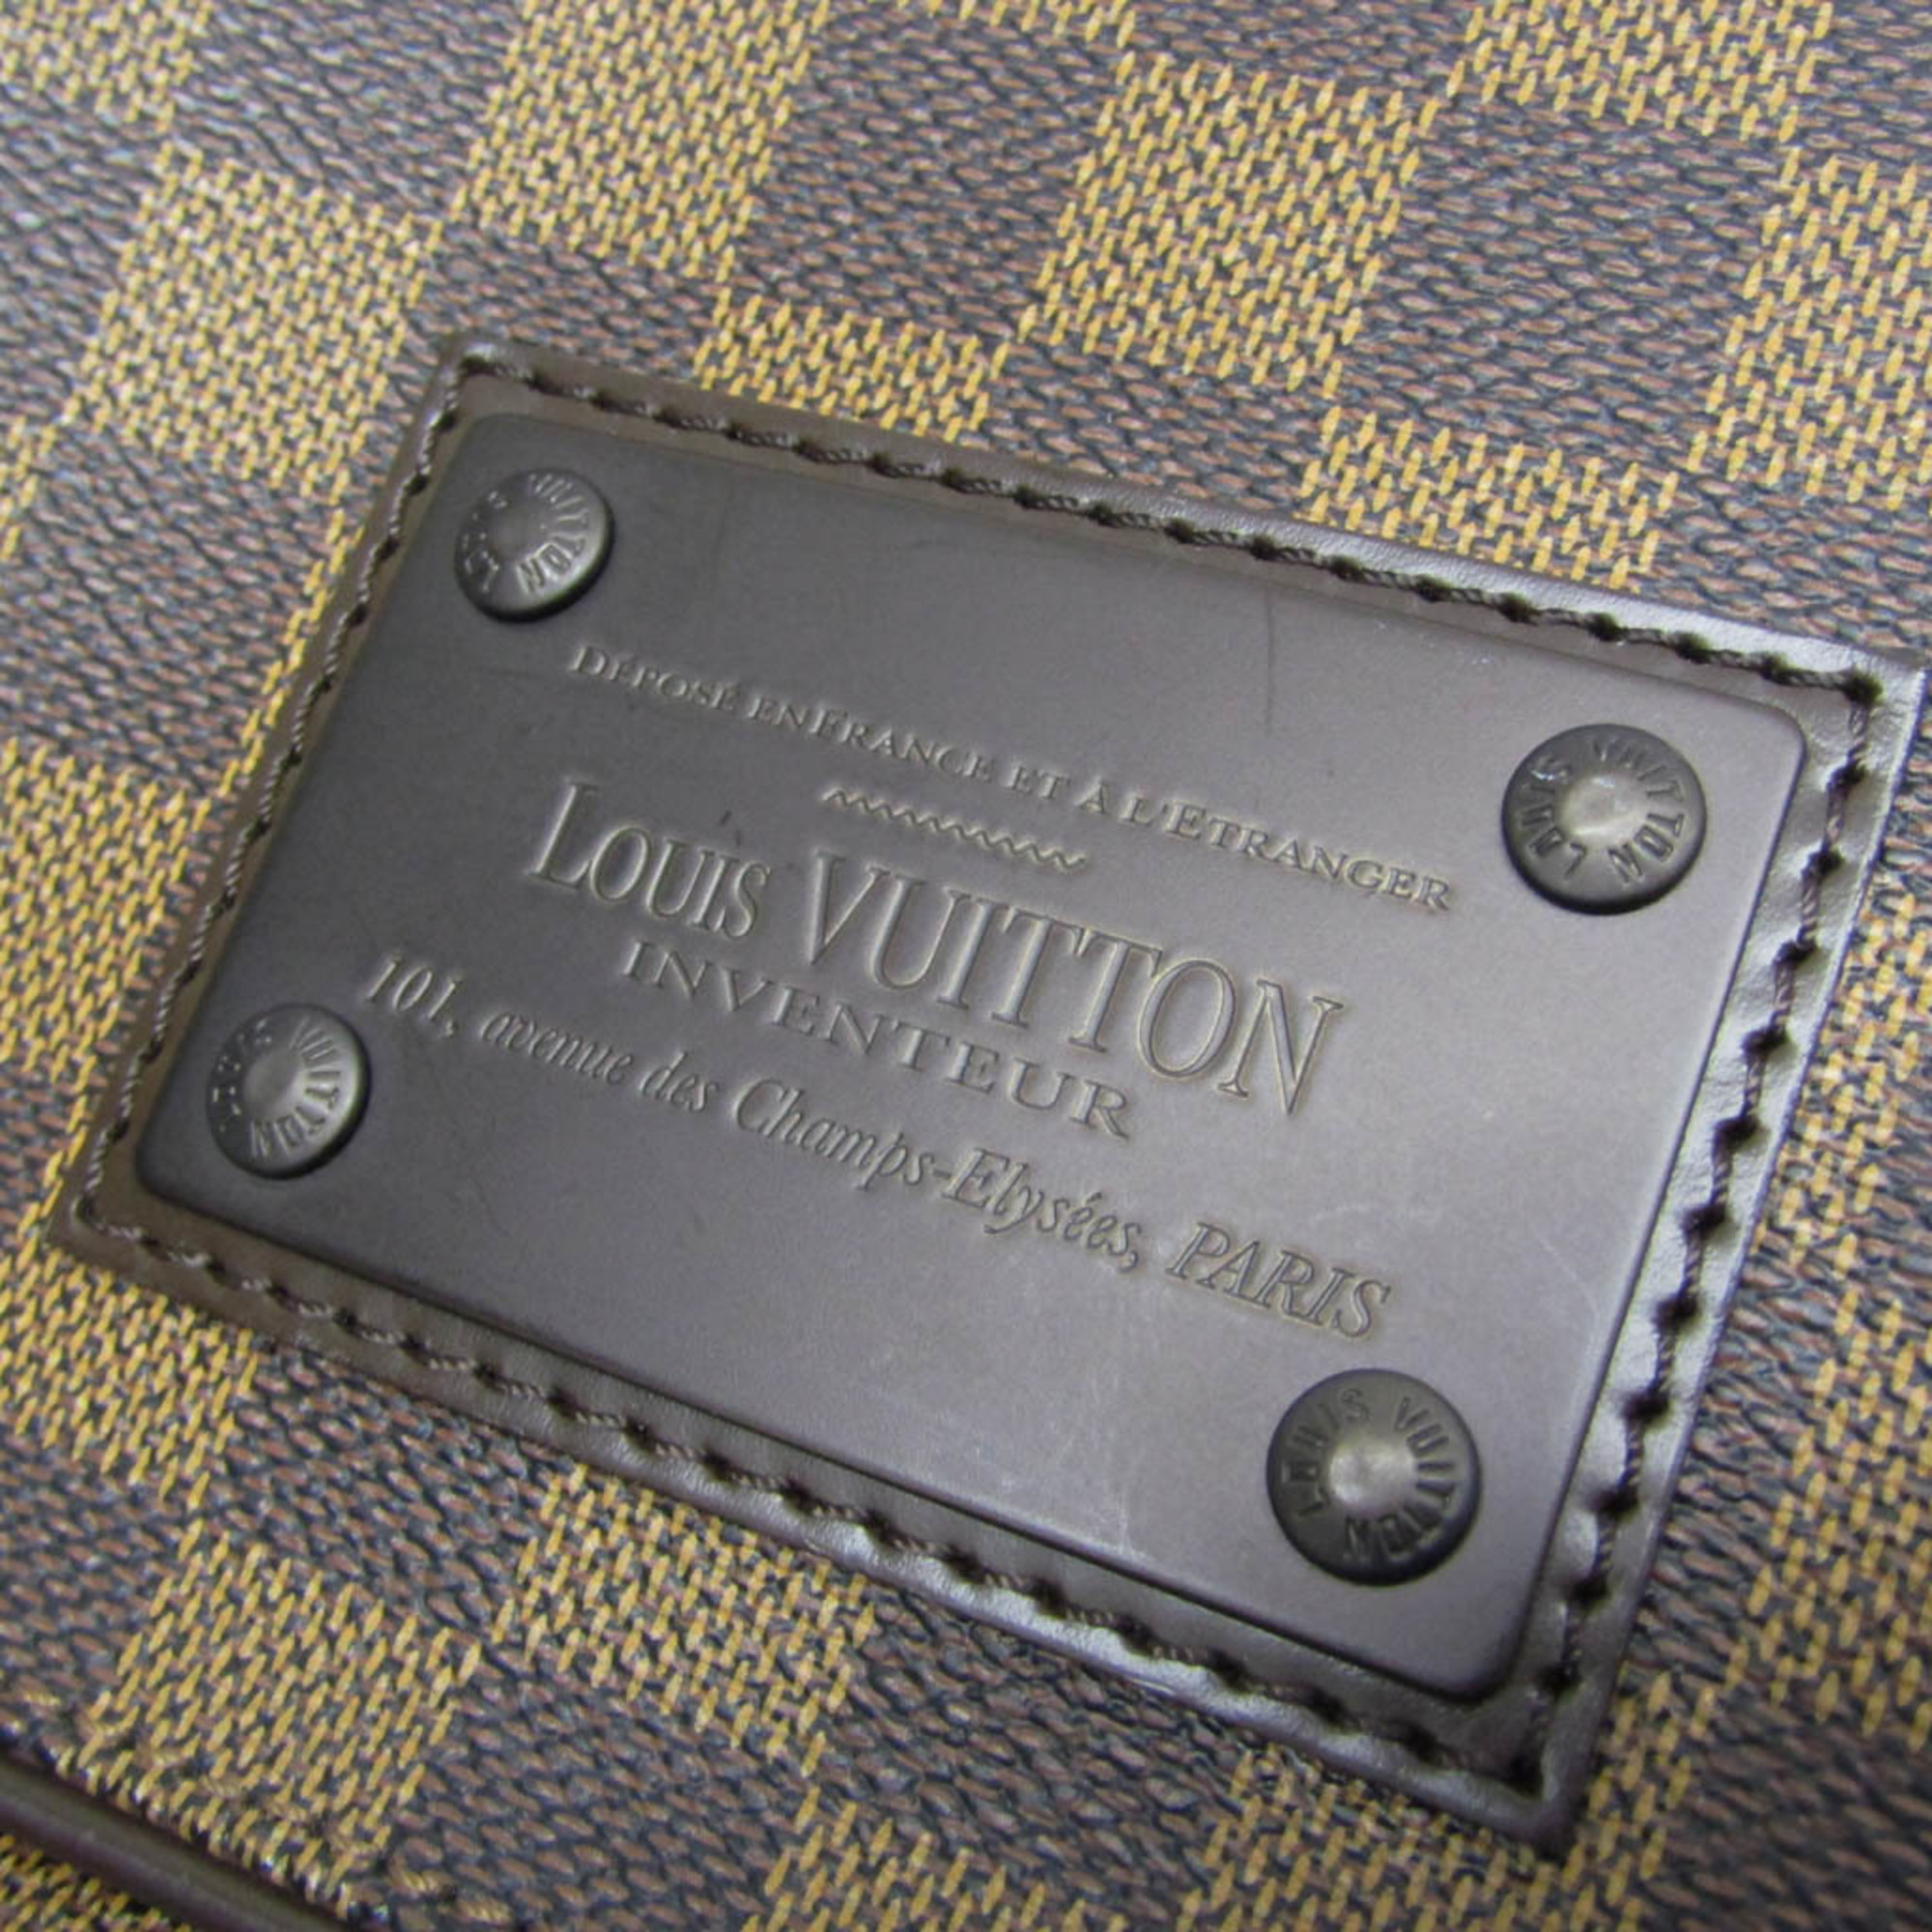 ルイ・ヴィトン(Louis Vuitton) ダミエ ブルックリンMM N51211 メンズ ショルダーバッグ エベヌ